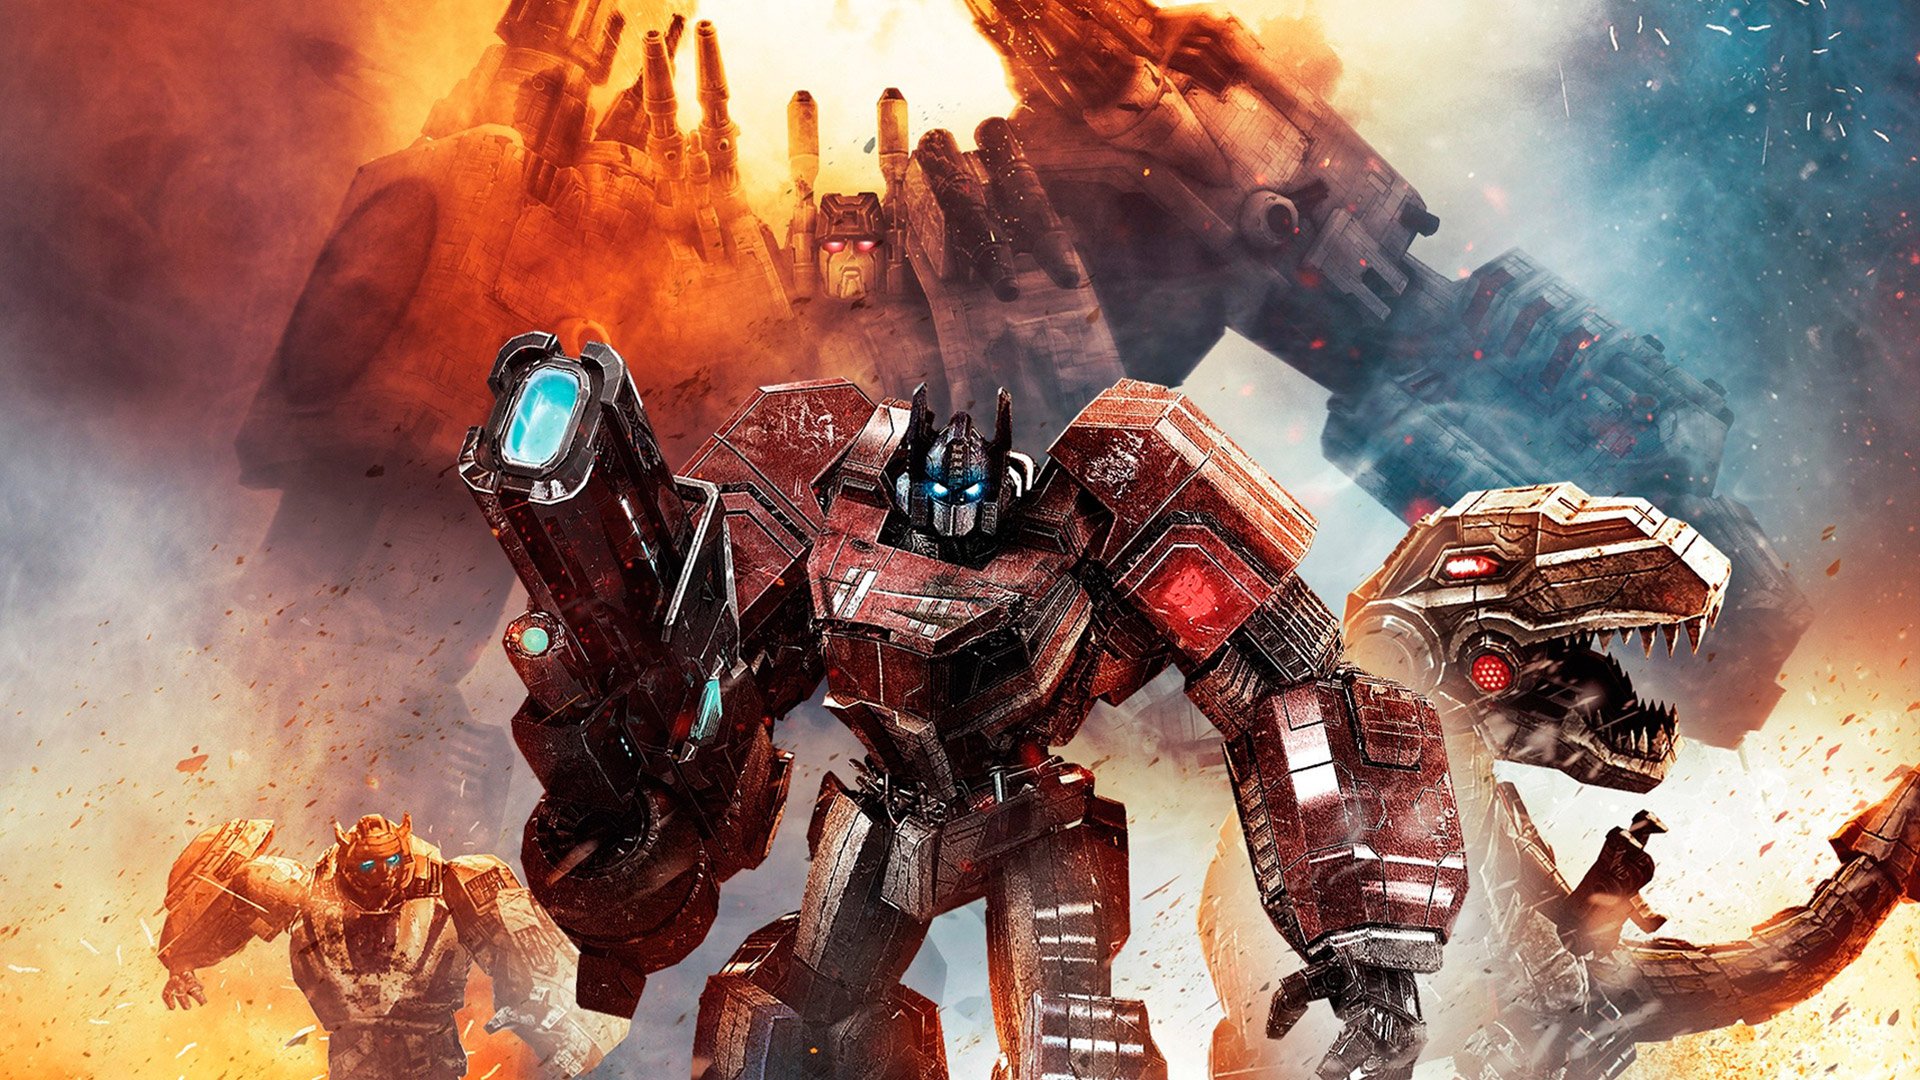 Transformers: Sụp đổ Cybertron hình nền HD và nền tảng: Bạn đã sẵn sàng chiến đấu cho tương lai của Cybertron trong Transformers? Hãy tải bộ sưu tập hình nền HD và nền tảng để cảm nhận rõ hơn thế giới Transformers đang nảy lửa, đầy thách thức. Hãy thể hiện bản thân để được chứng minh là một chiến binh thực thụ!